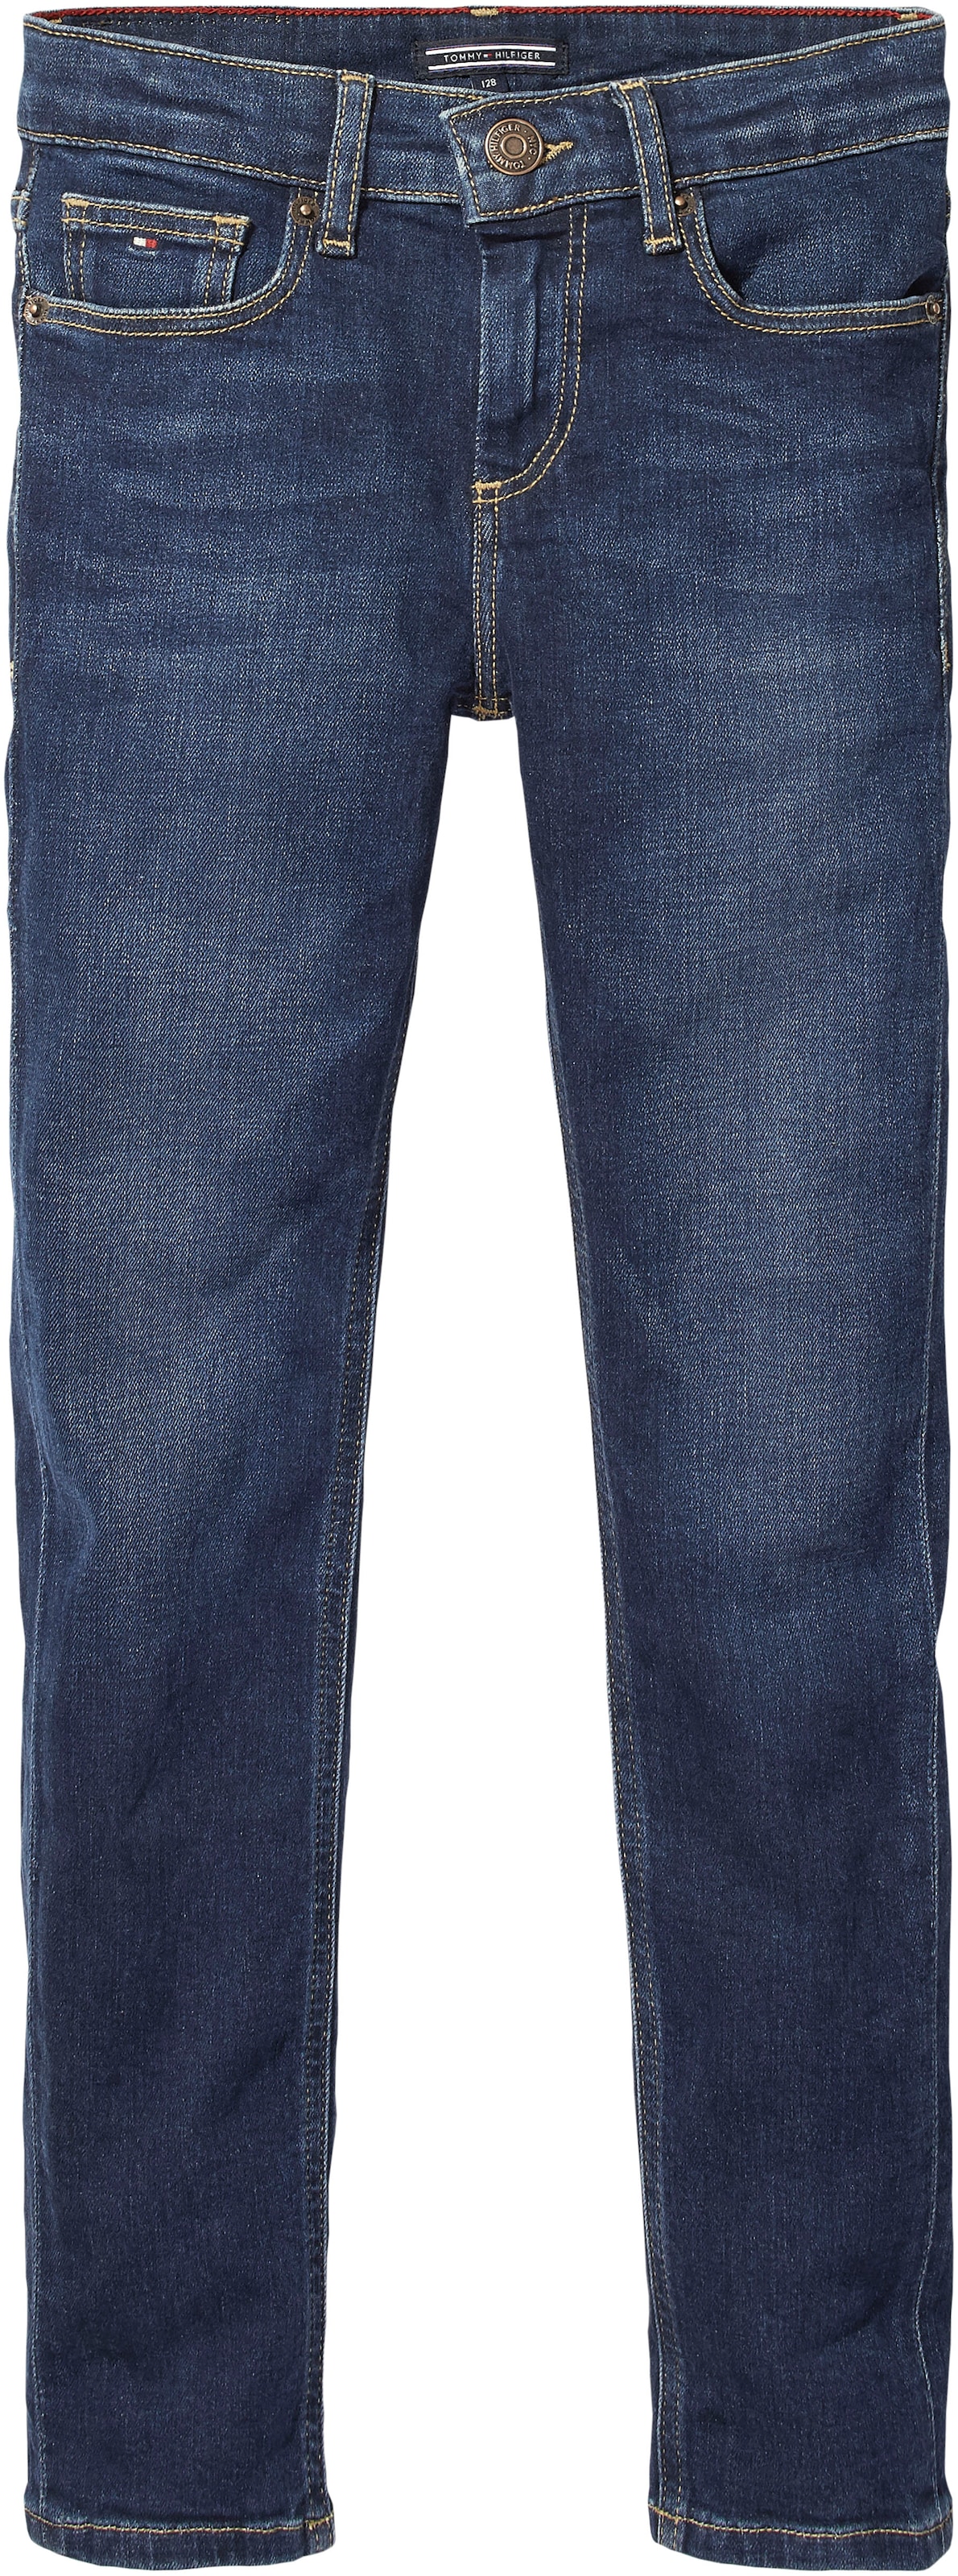 Hilfiger OTTO Online Shop Tommy mit Markenlabel DYE«, »SCANTON Slim-fit-Jeans im FOAM Y Tommy Hilfiger